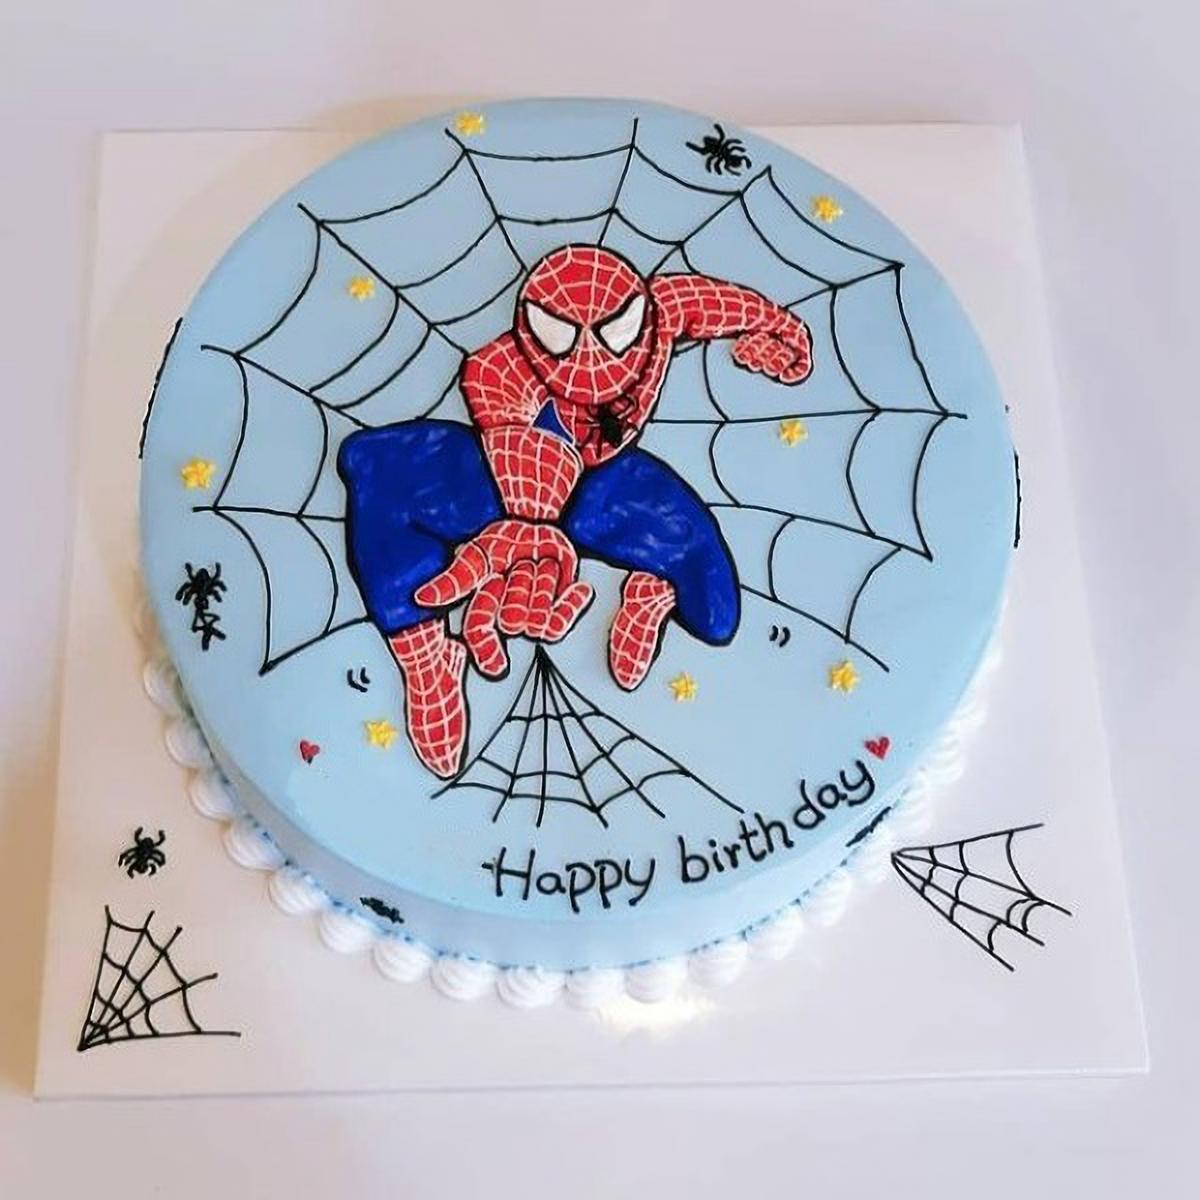 Bánh sinh nhật cho bé trai - Bánh kem sữa trang trí đồ chơi người nhện,spiderman  mẫu 3 - Tiny Pretty Cake